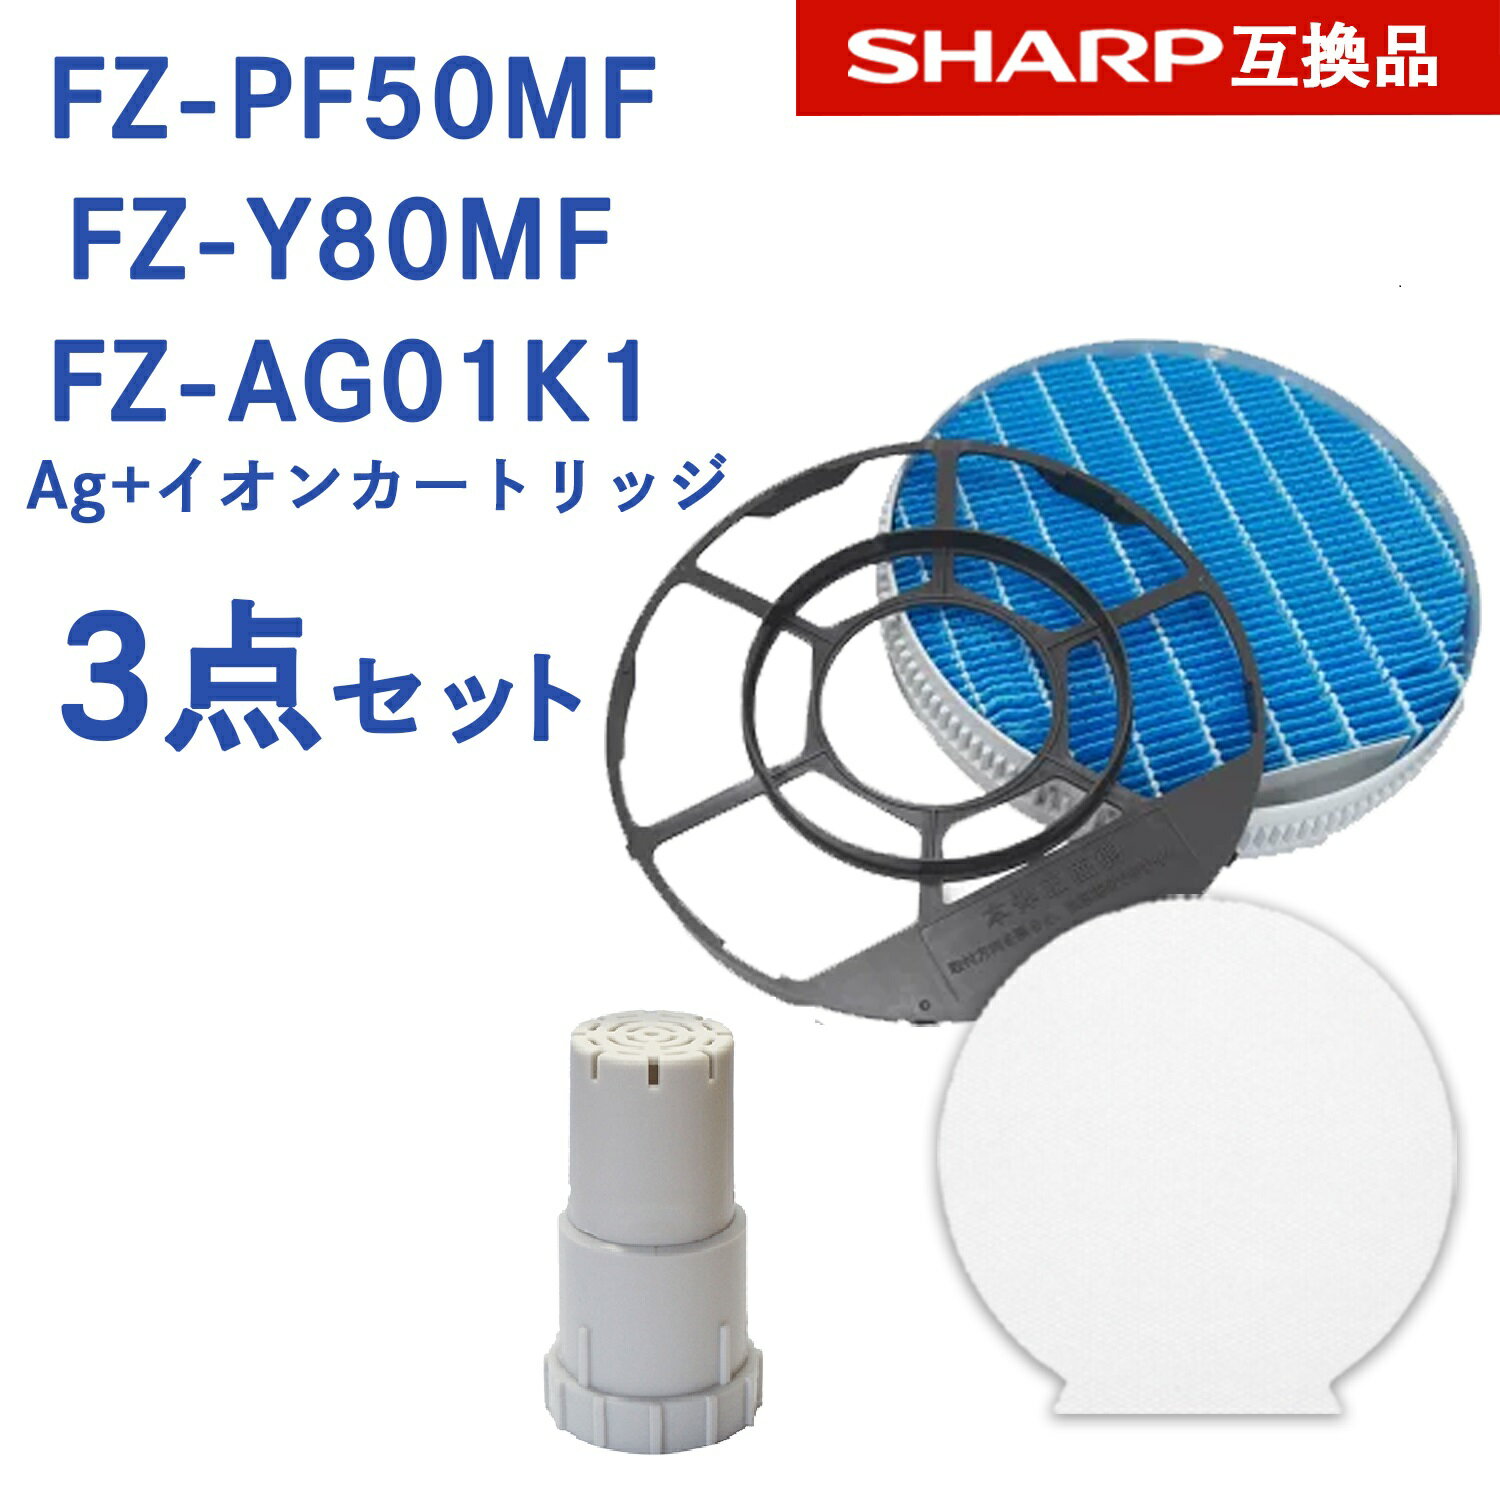 【レビュー特典あり】SHARP ( シャープ )互換品 FZ-PF50MF 使い捨て加湿プレフィルター 6枚入り / FZ-Y80MF 加湿フィルター (枠付き) / Ag イオンカートリッジ FZ-AG01K1 純正品同等 プラズマクラスター 加湿 空気清浄機用 交換用フィルターfz-pf50mf fz-y80mf fz-ag01k1